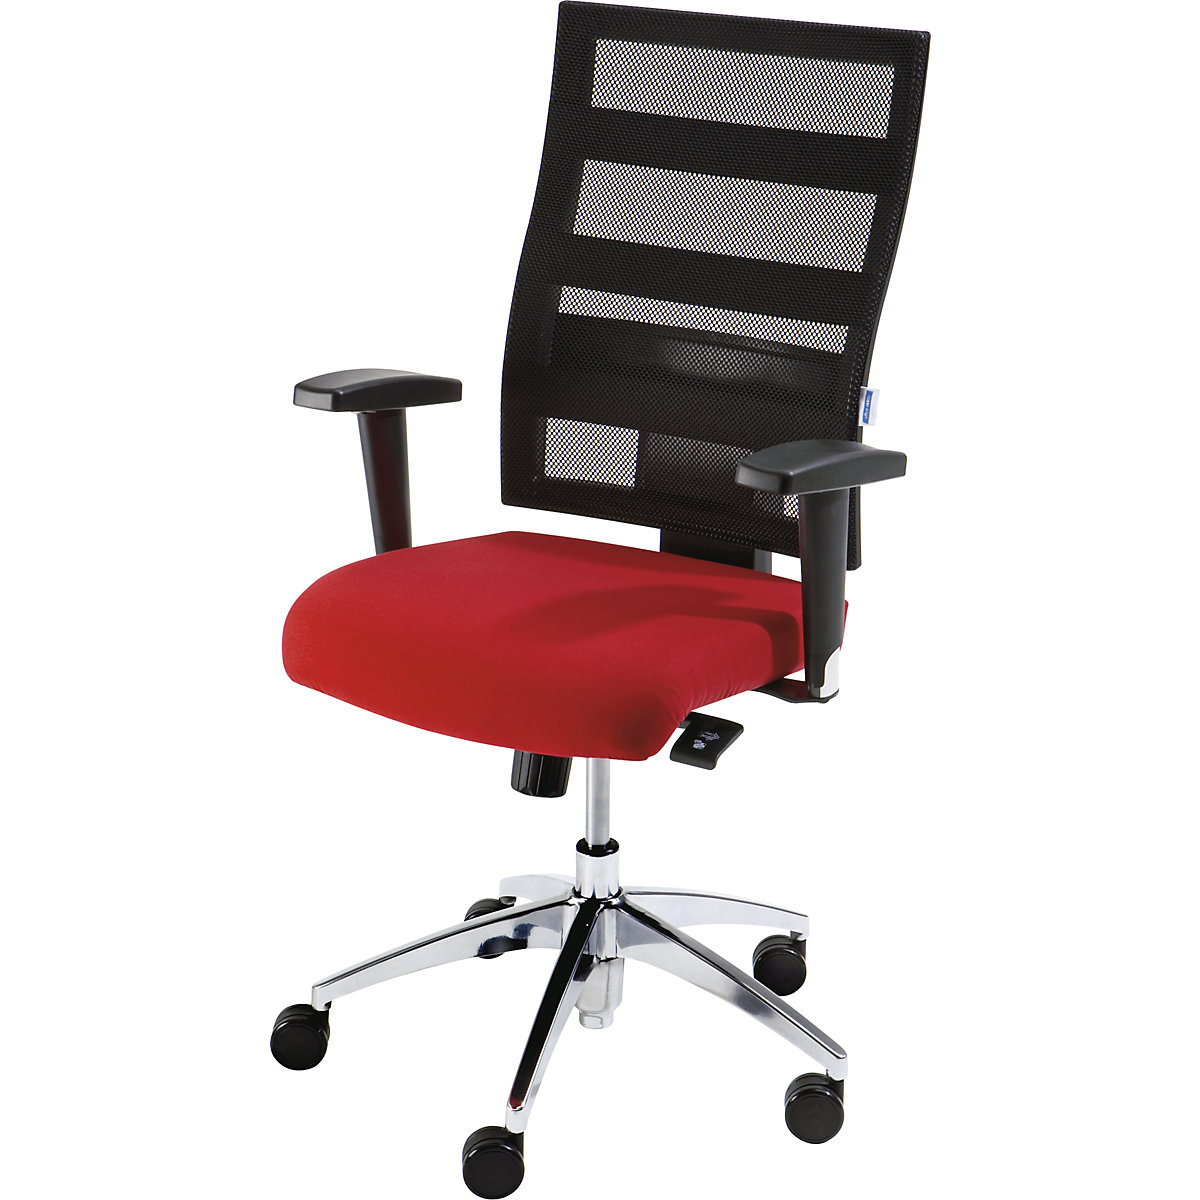 EUROKRAFTpro – Otočná židle pro operátory, výška opěradla 550 mm, mechanika s bodovou synchronizací, plochý sedák, červený sedák, černé síťované opěradlo